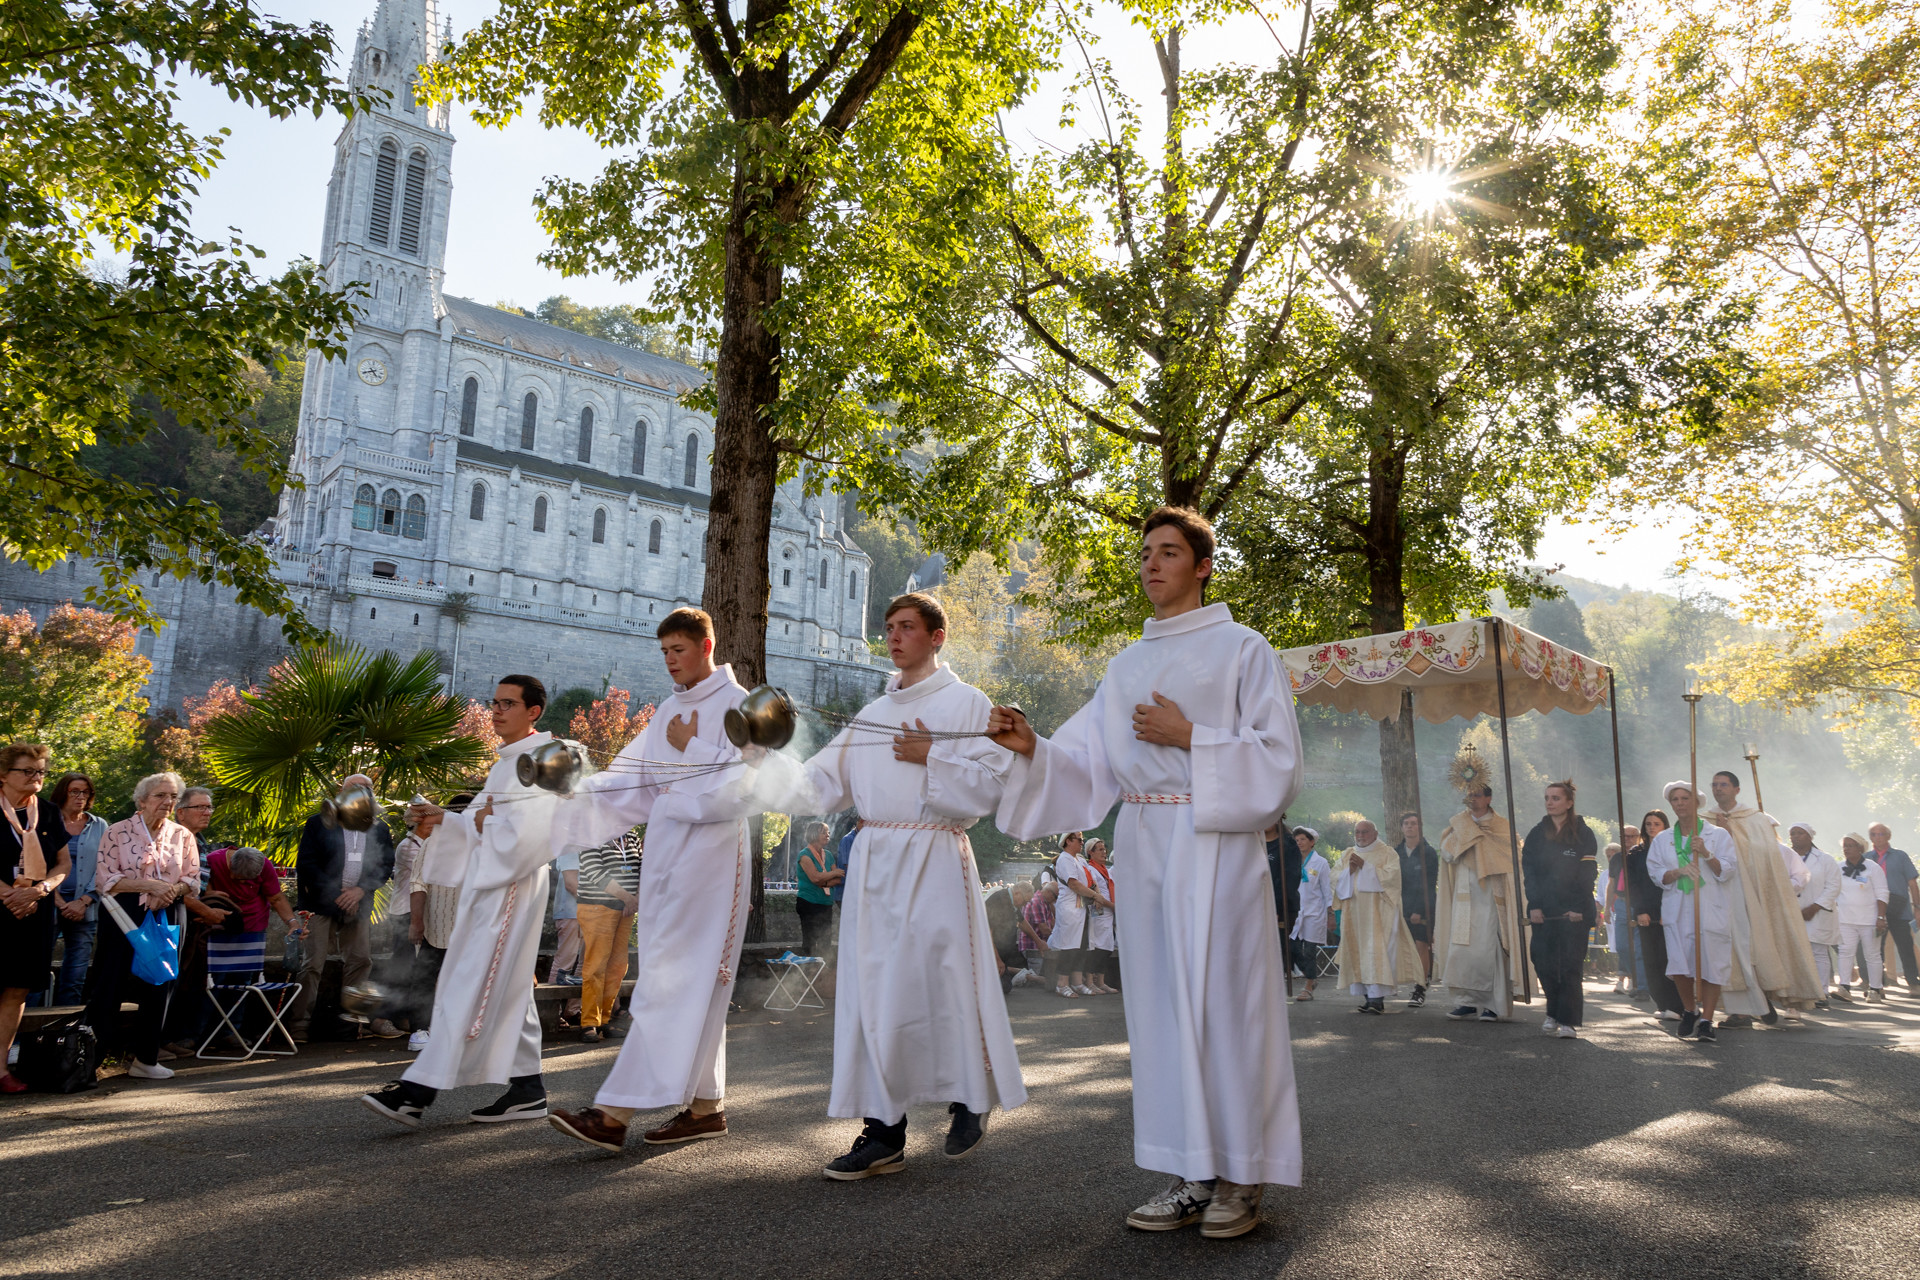 Les activités proposées par le Sanctuaire Notre-Dame de Lourdes